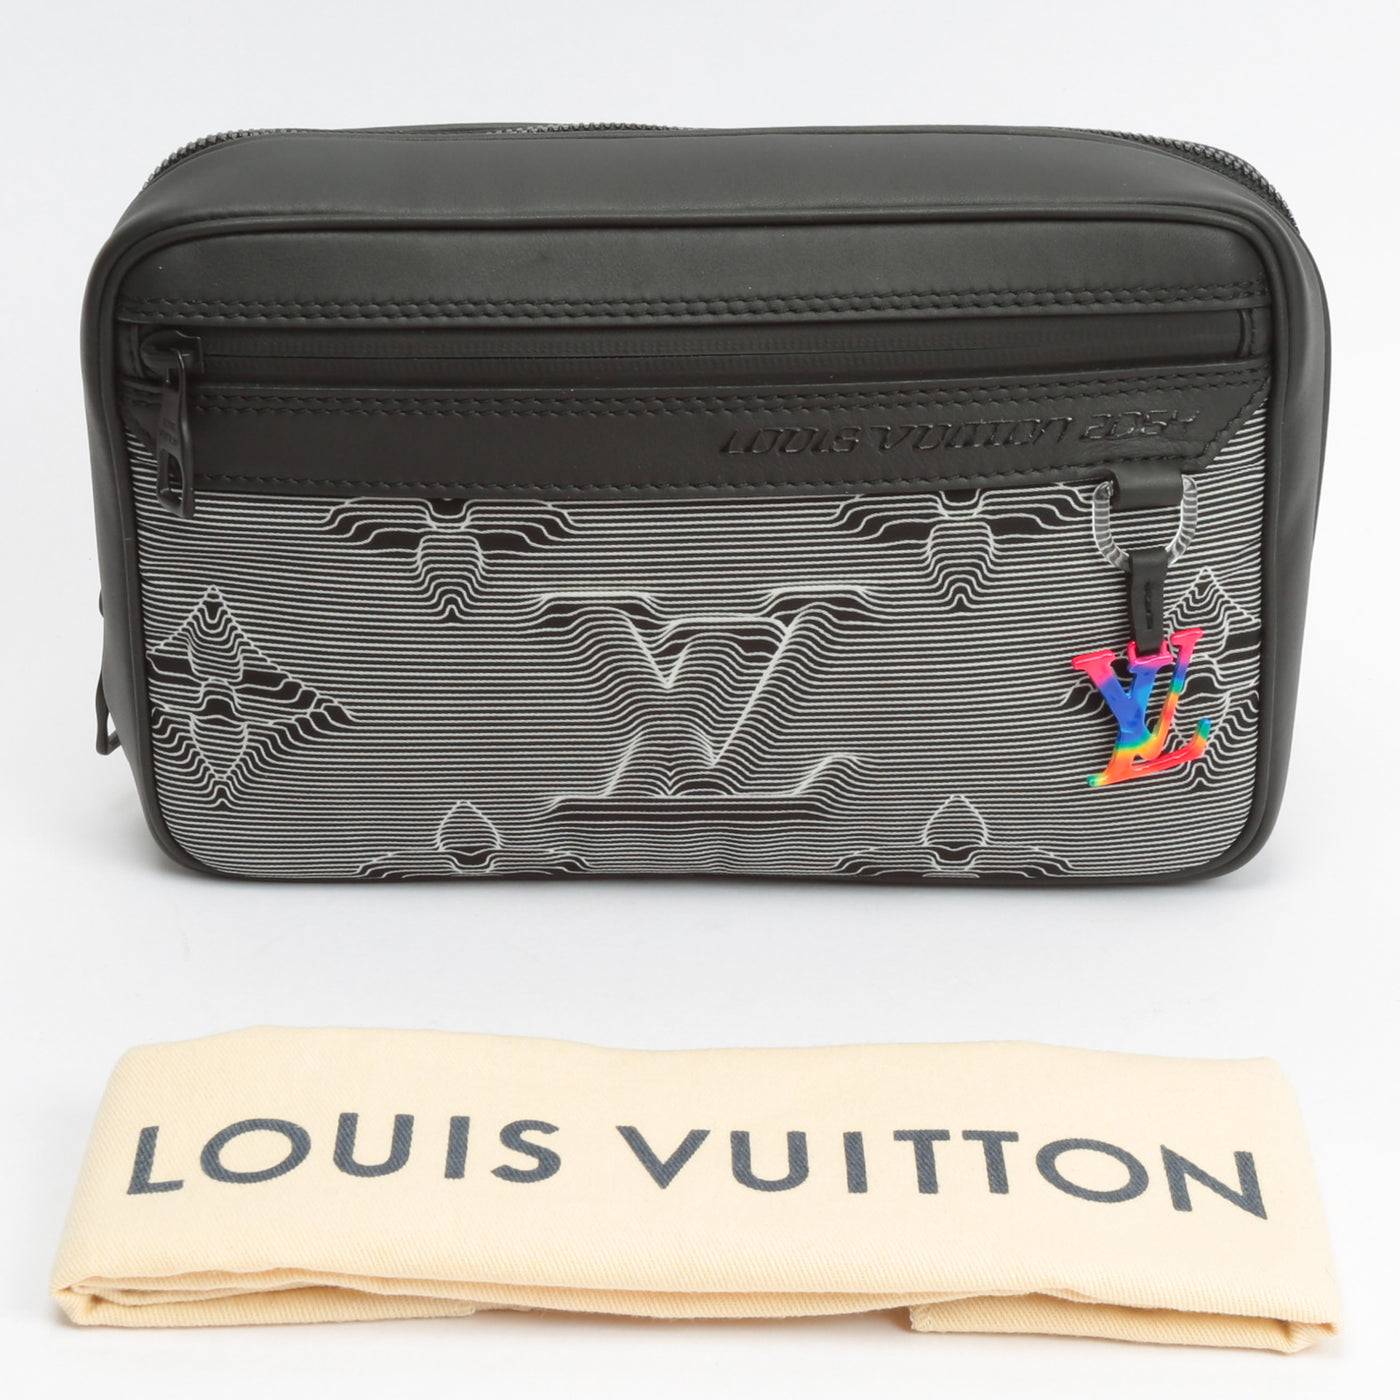 LOUIS VUITTON Limited Edition Expandable 2054 Messenger Bag